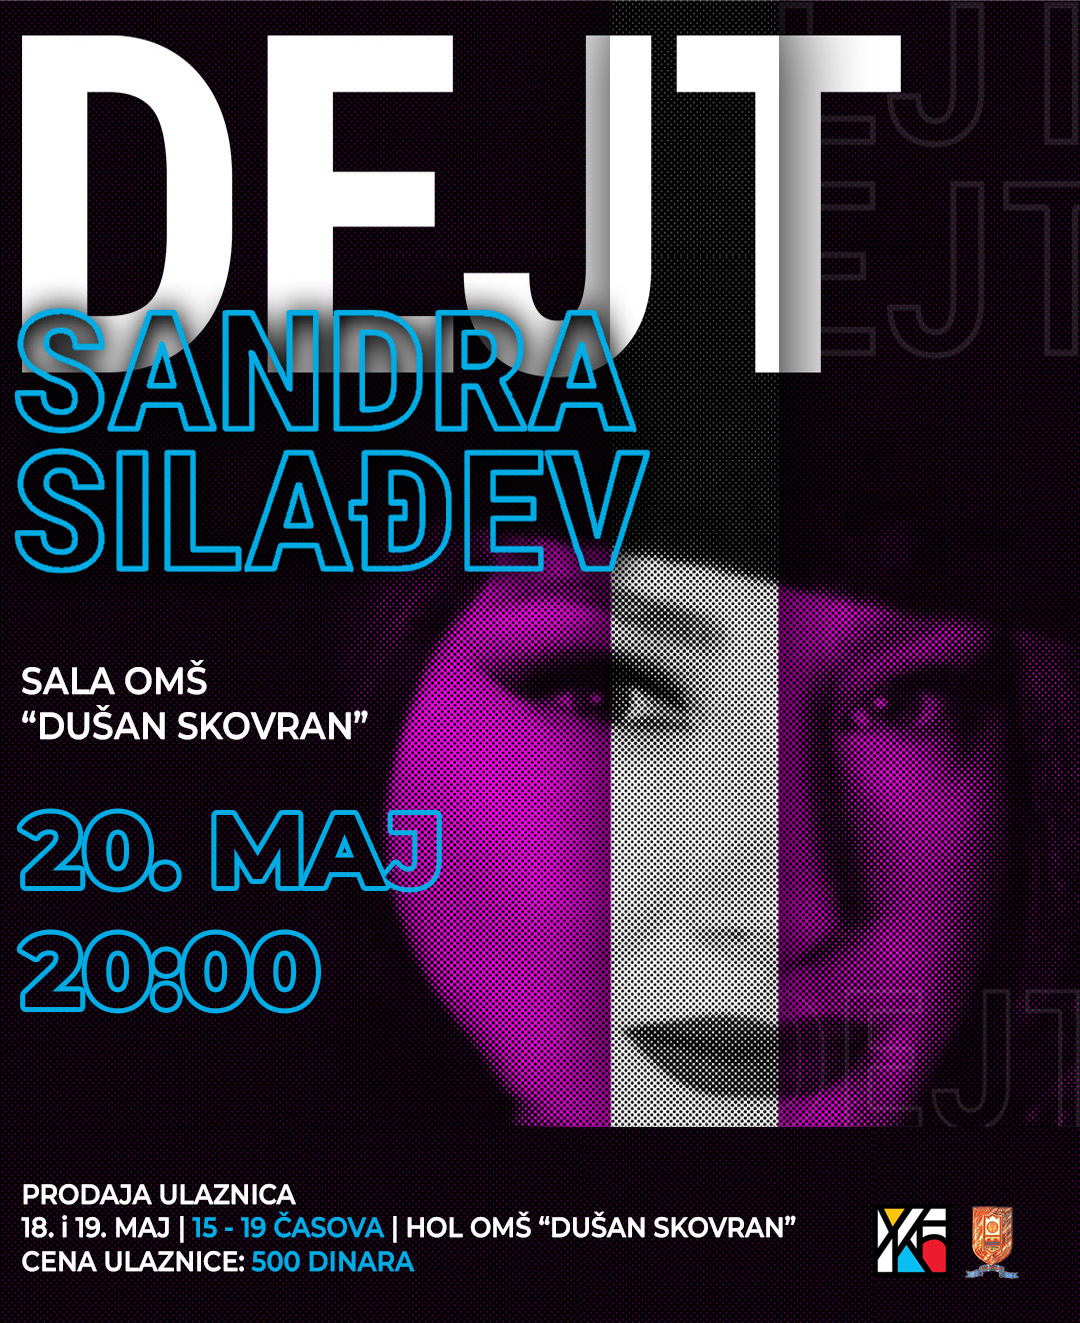 Monodrama Sandre Silađev 20. maja u Ćupriji